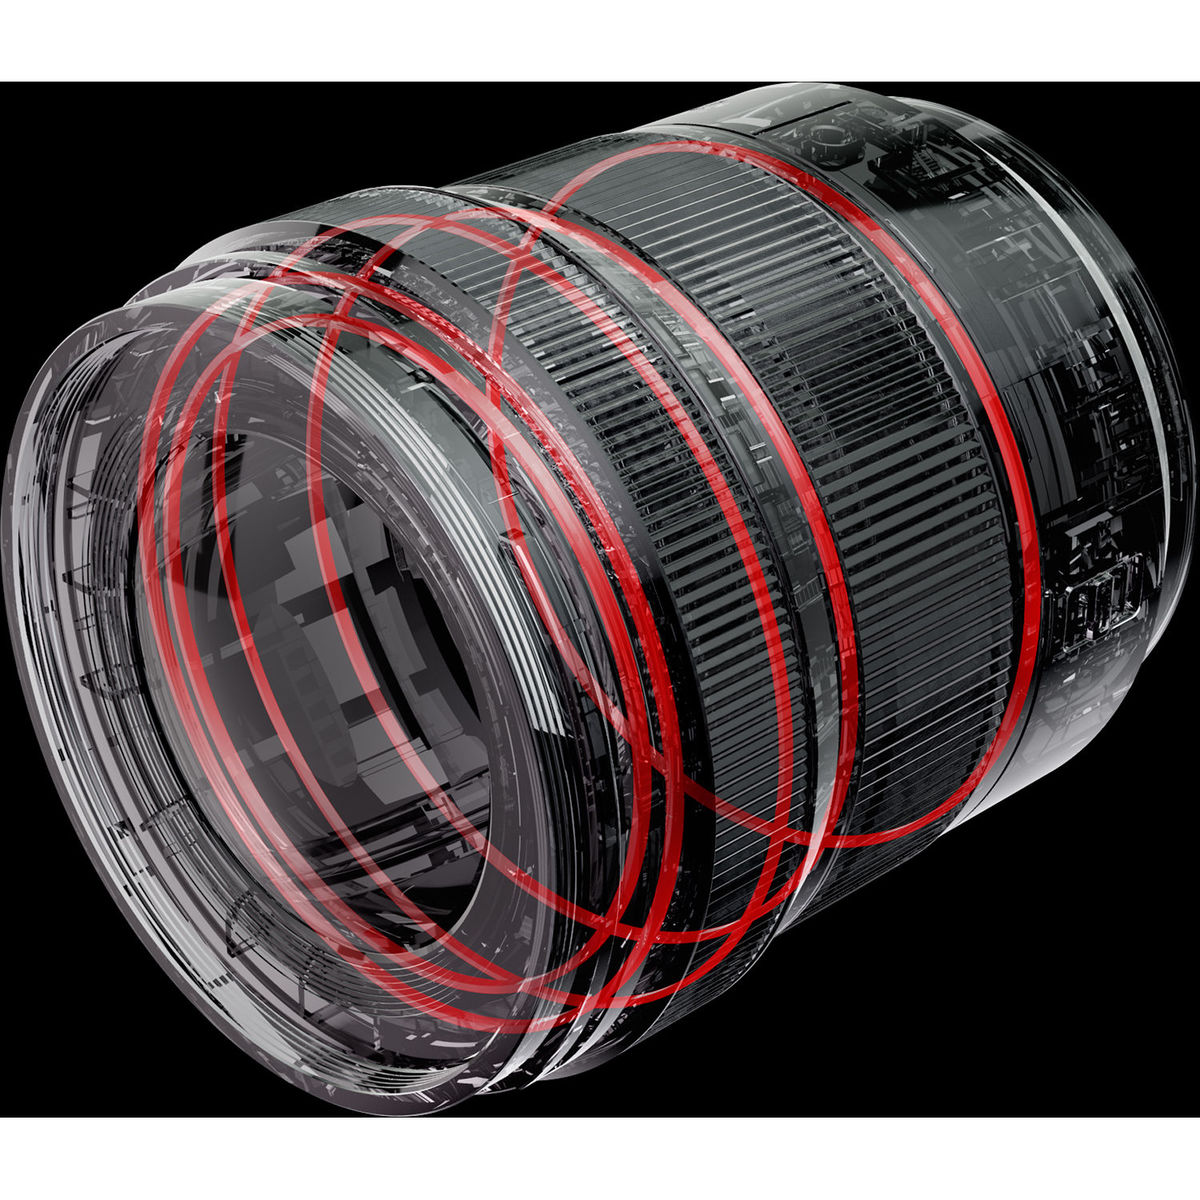 3. Panasonic Lumix S 20-60mm F3.5-5.6 (kit lens)